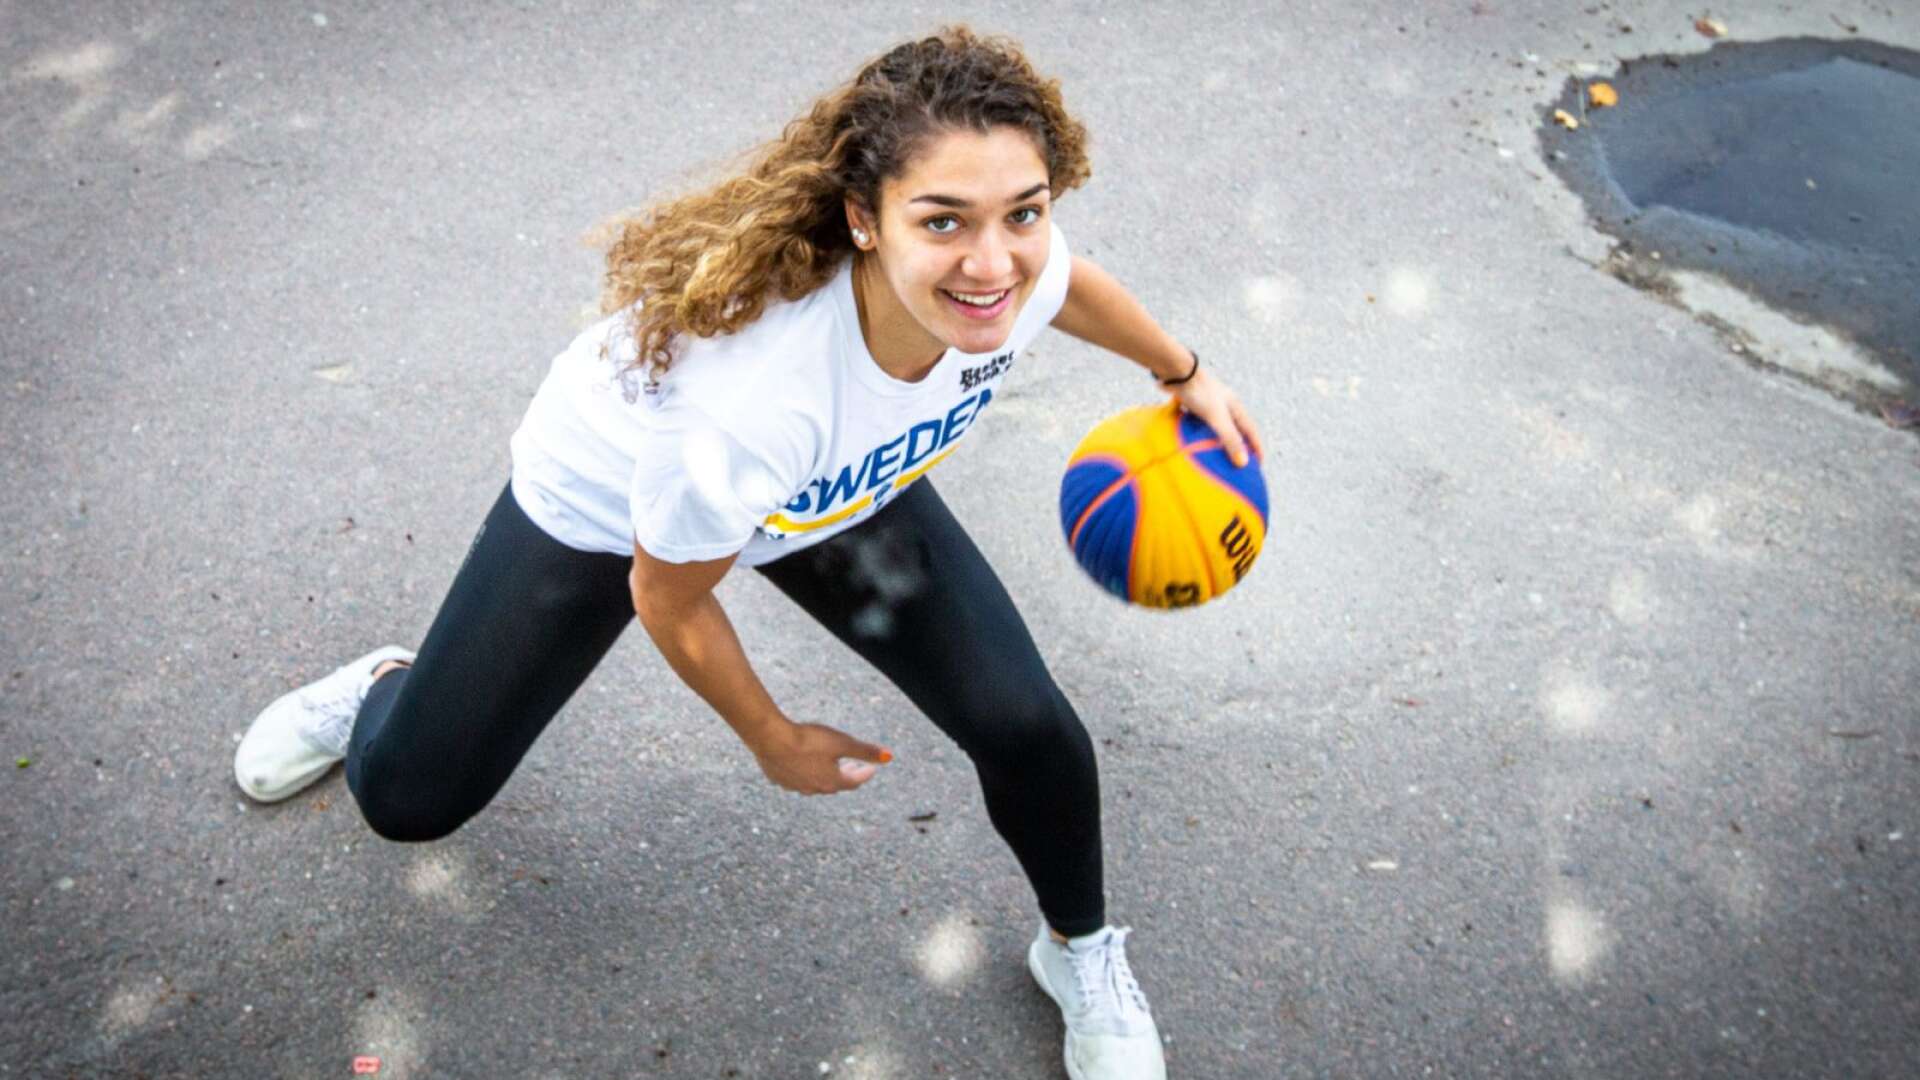 Värmländska jättetalangen Ruba Abo Hashesh tar studenten om en månad - och därefter blir det basket på juniorcollege i USA.